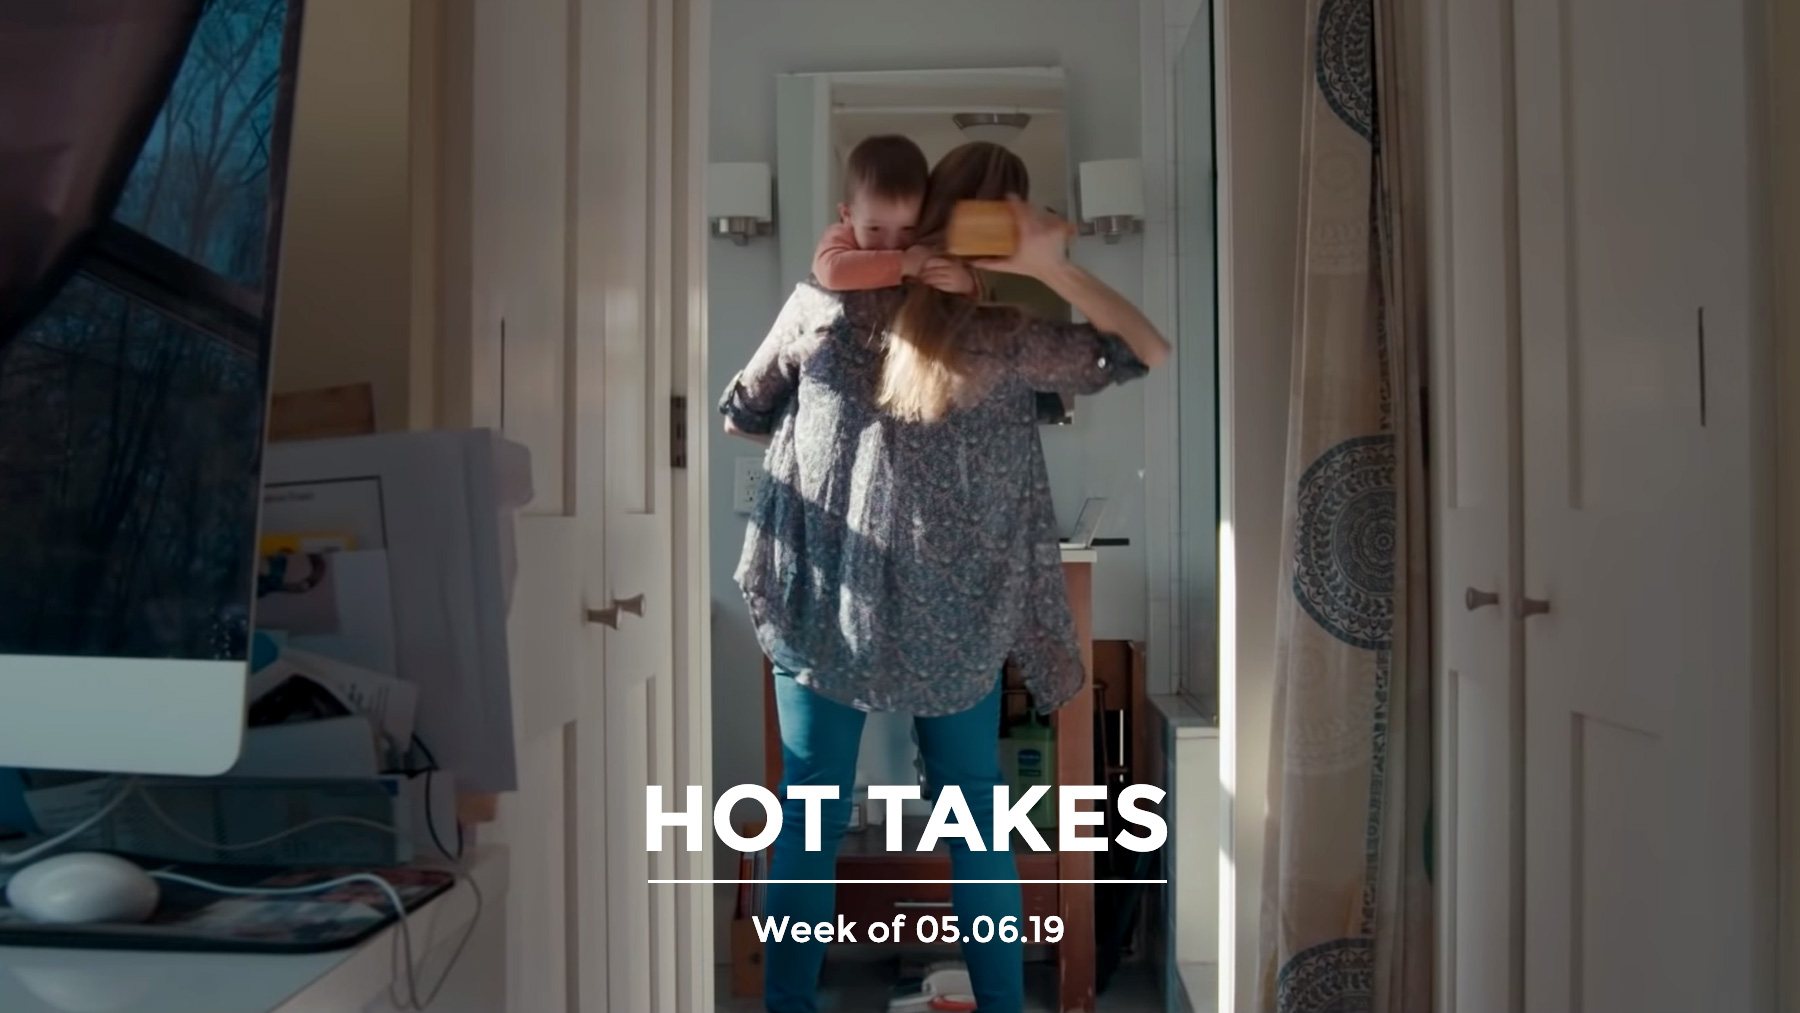 #HotTakes | Week of 05.06.2019